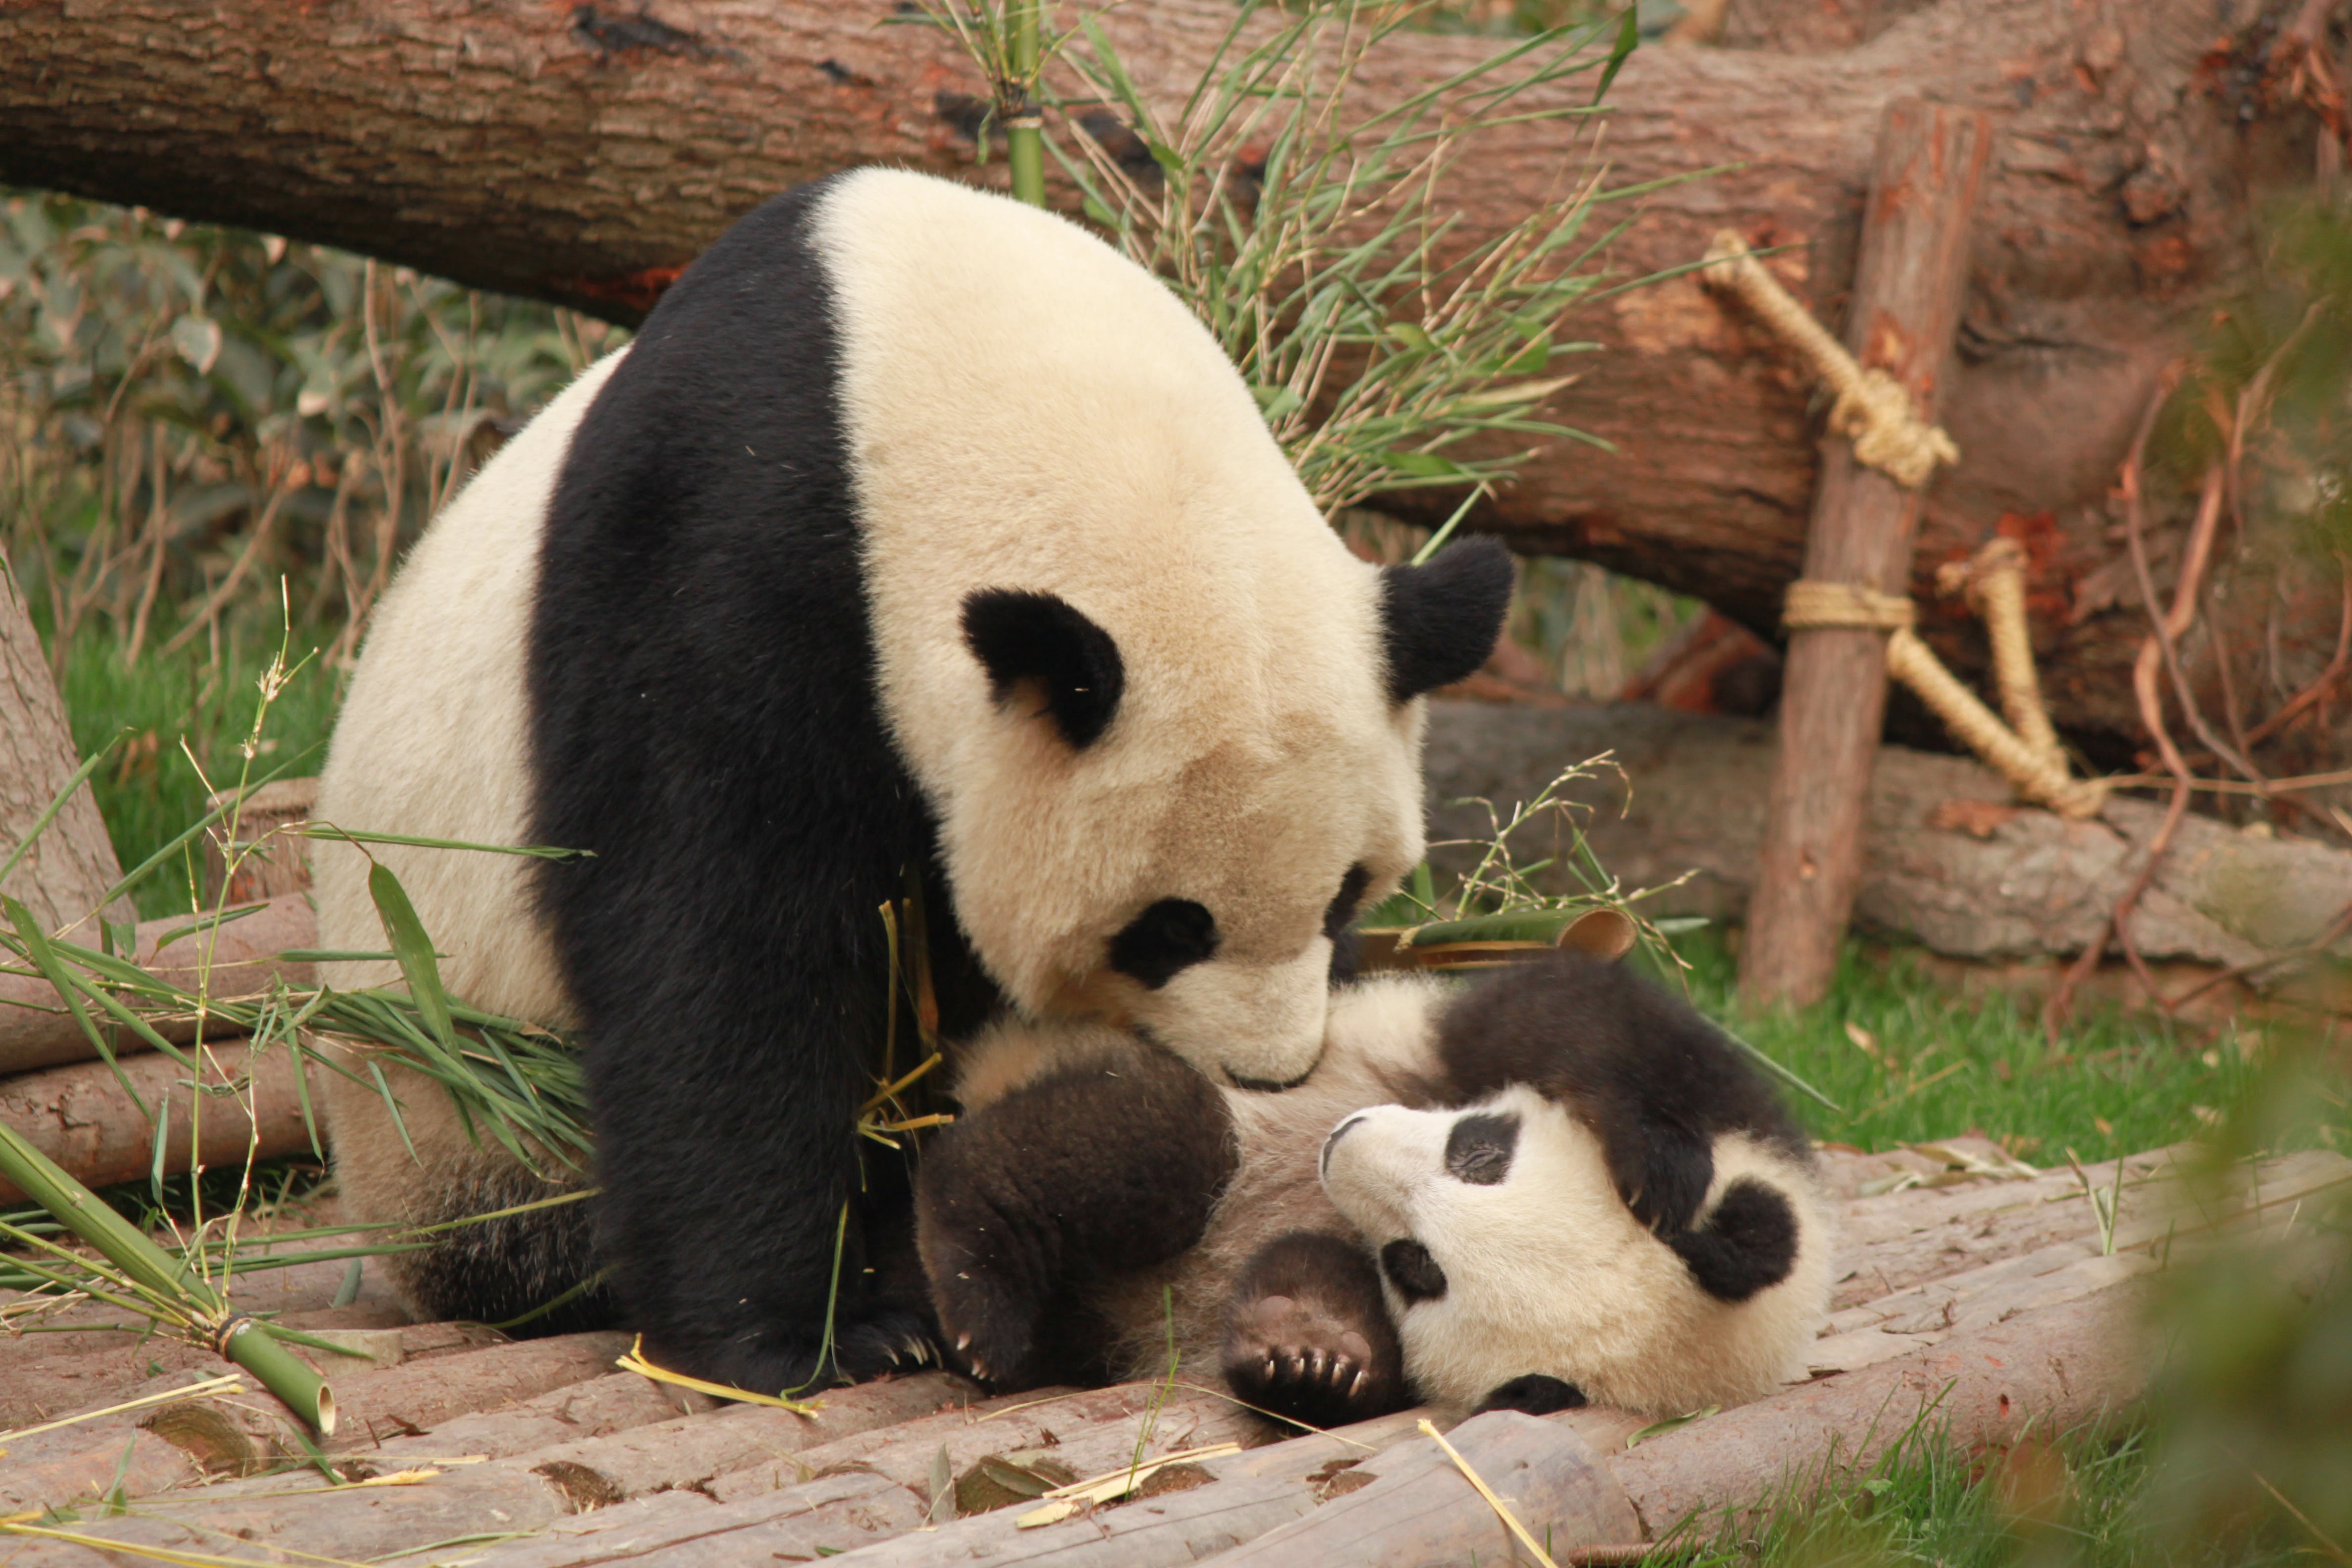 Takenoko: Cultive sua Diversão com Panda e Bambu neste Jogo Encantador